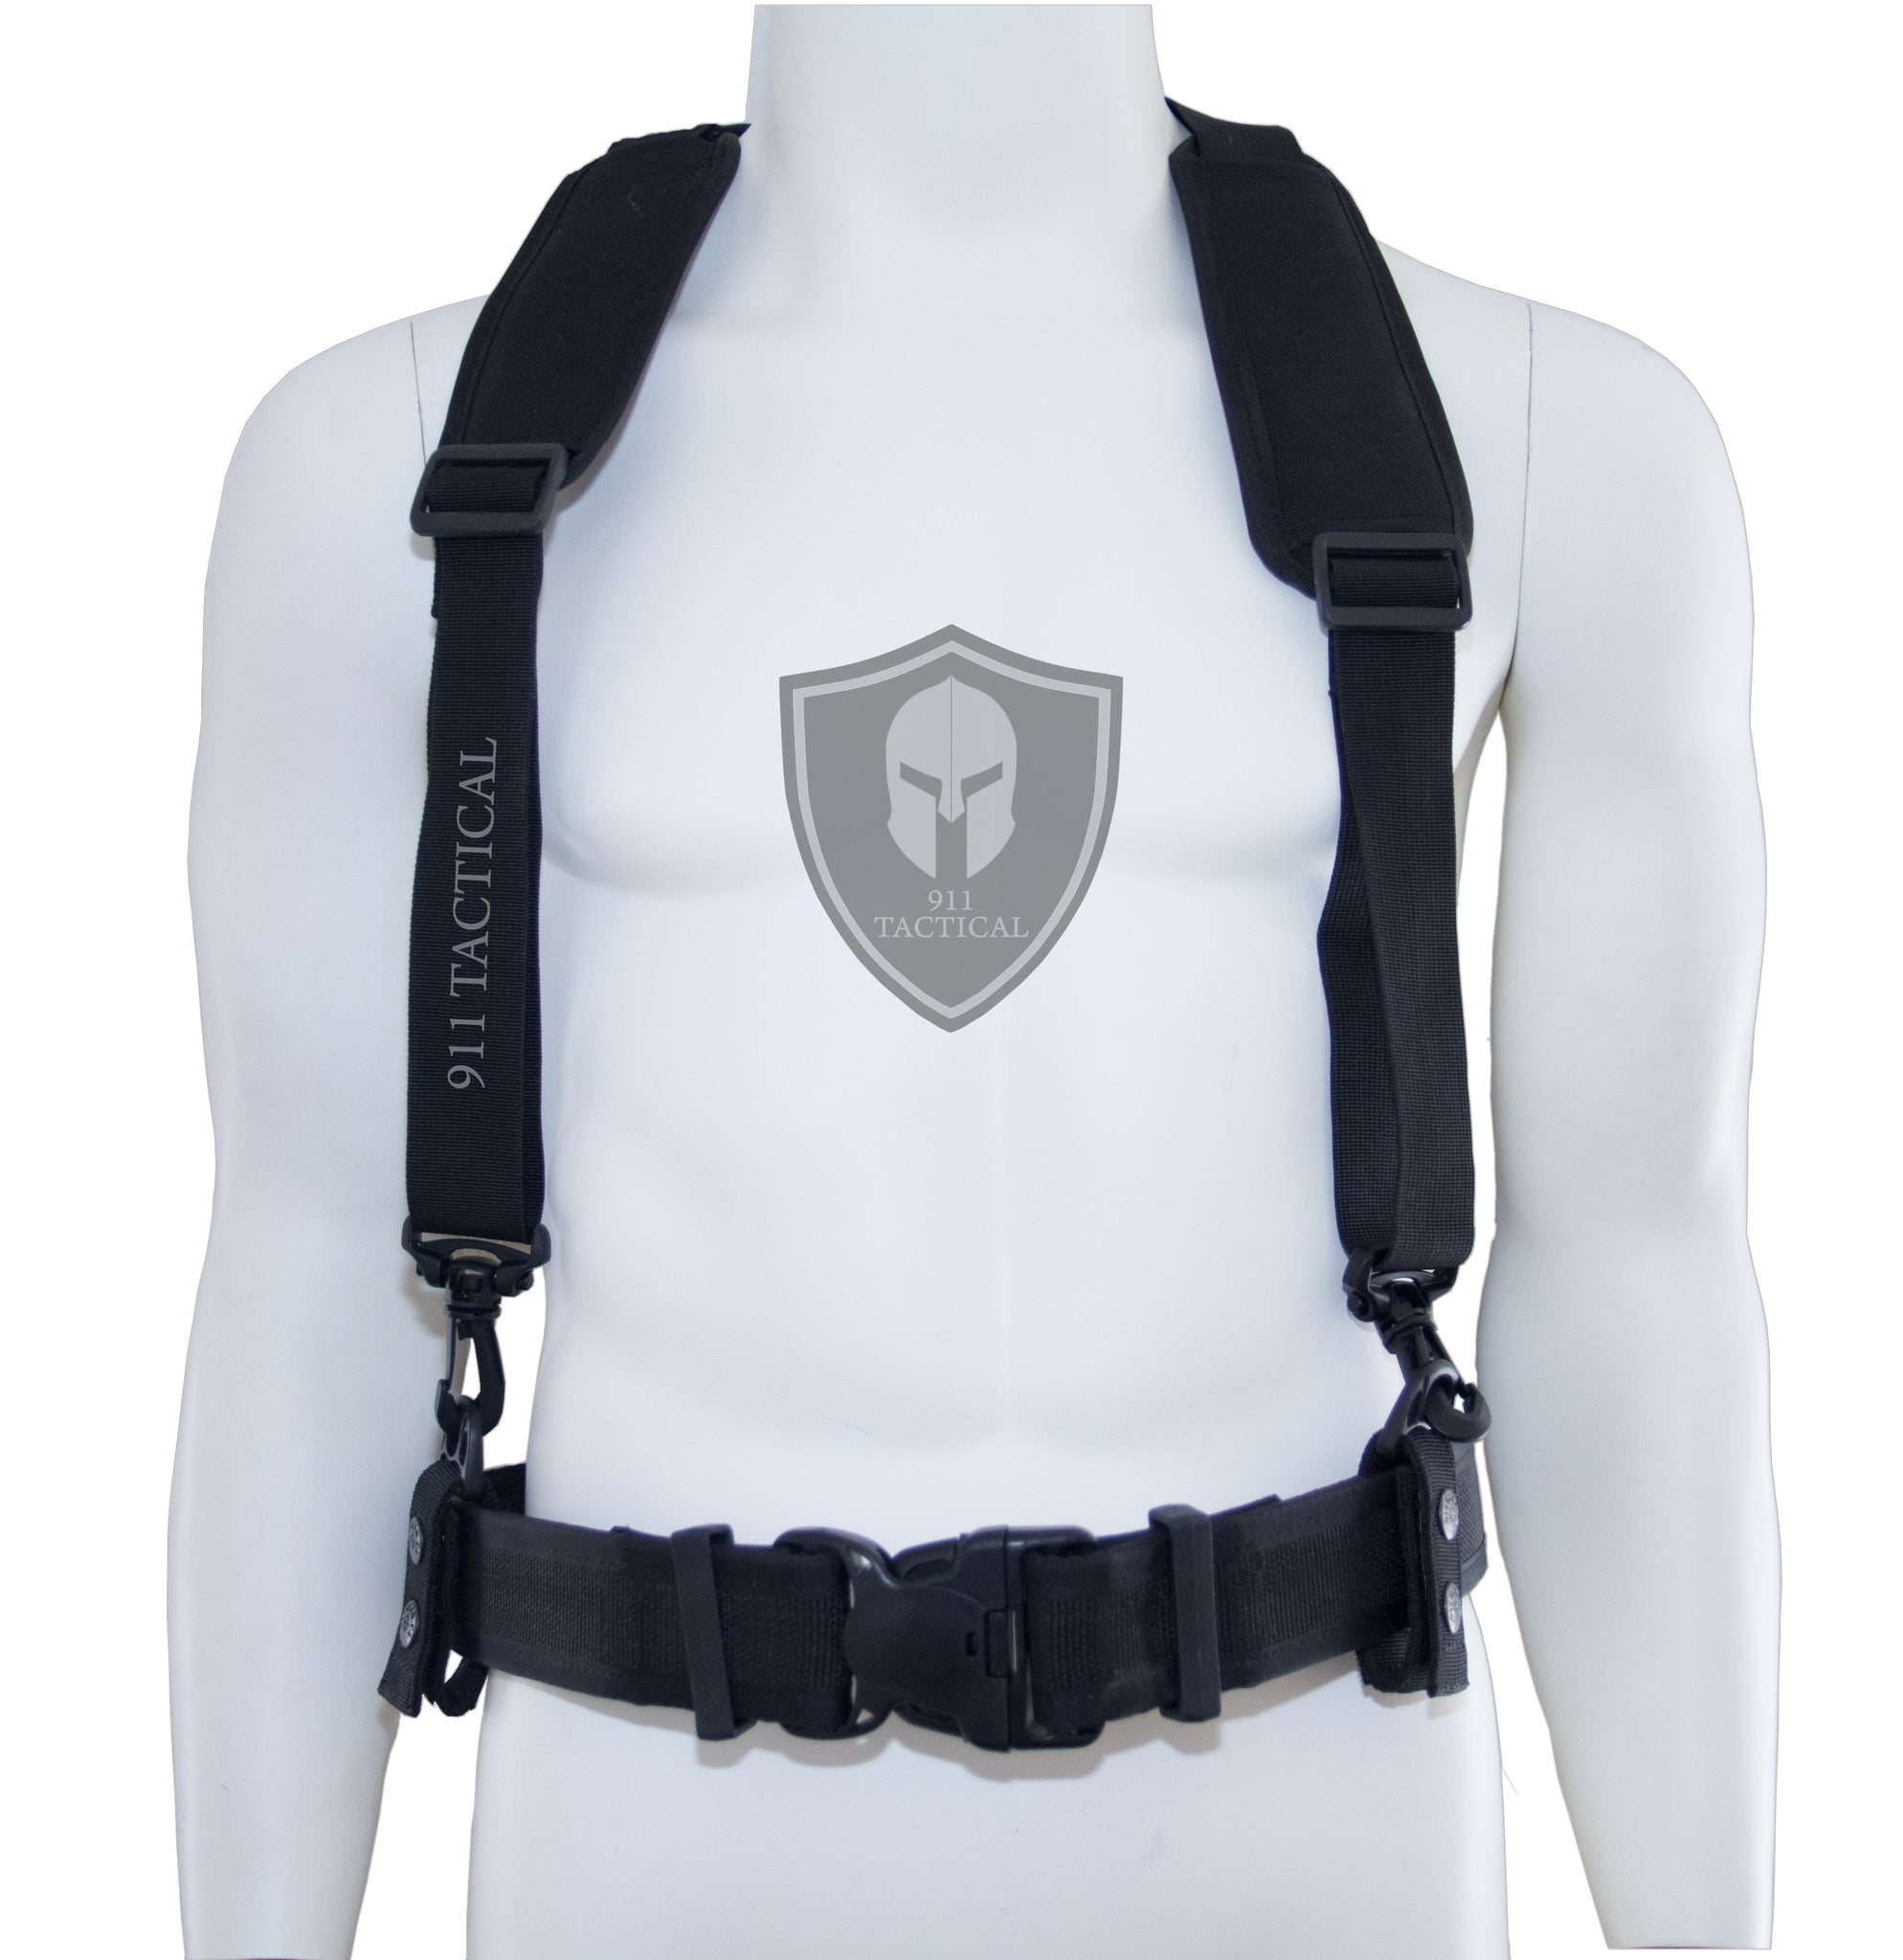 Duty Belts - 911 Tactical Gear